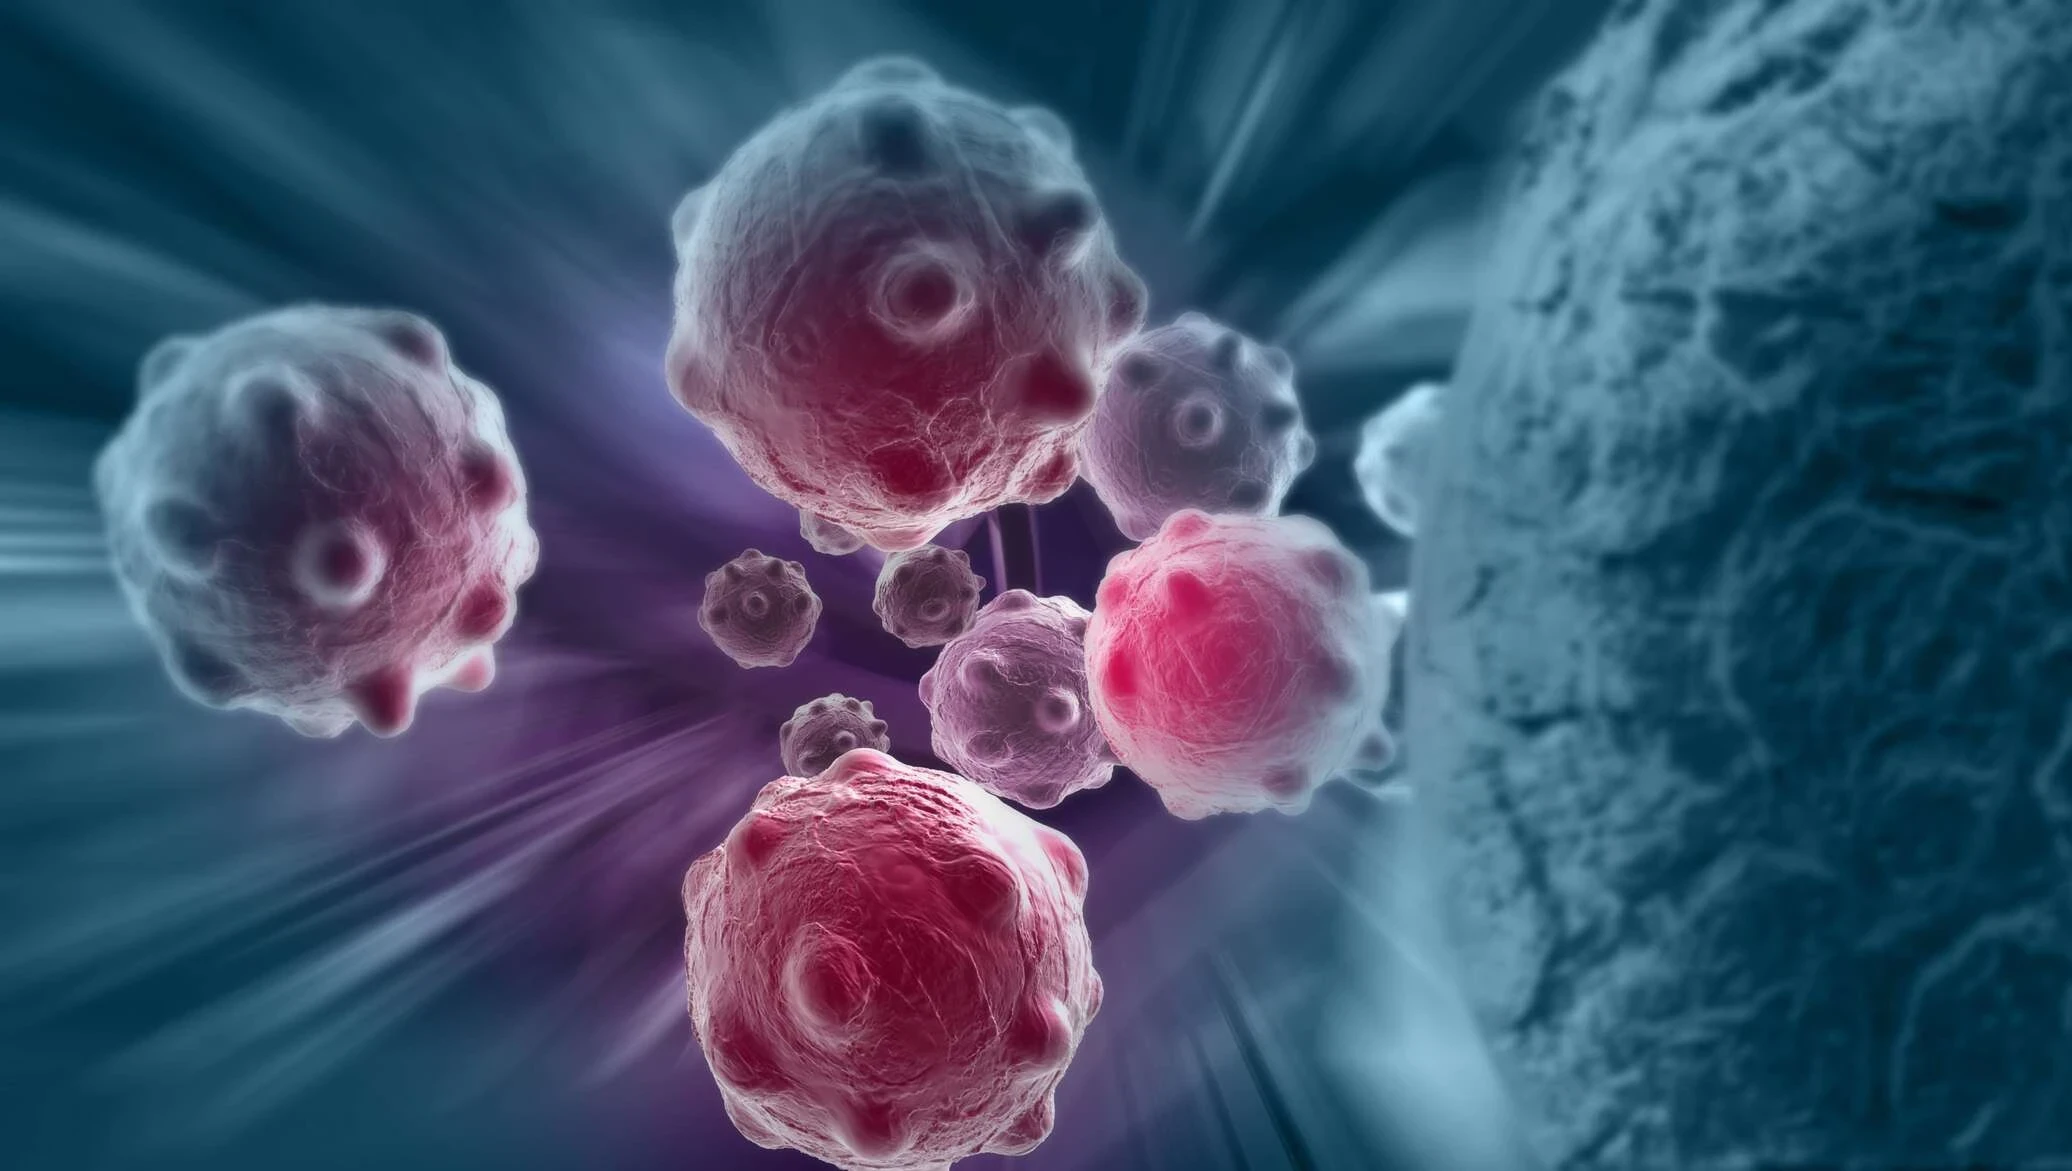 اكتشاف هـام يمكن أن ينقذ مرضى السـرطان في مراحل متأخرة من تطور الاورام